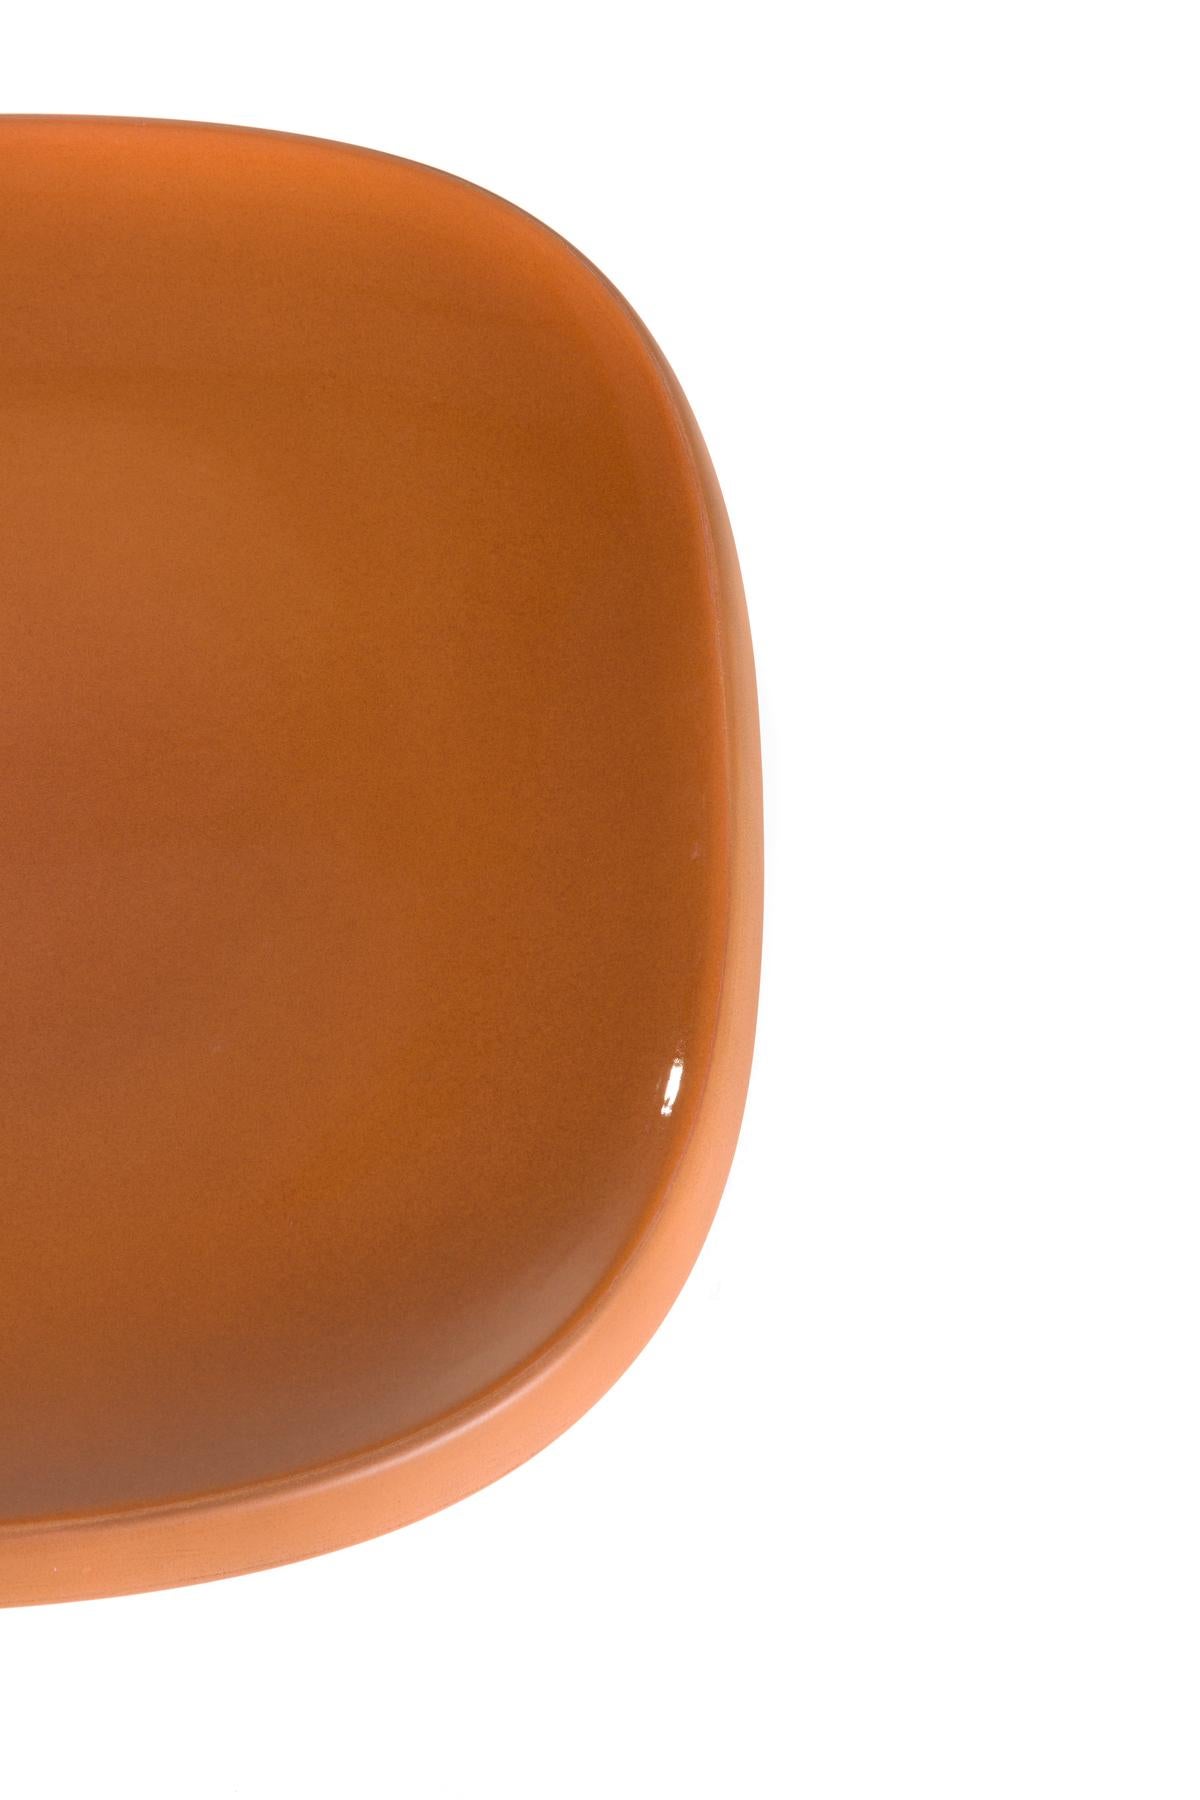 Rechteckiger, niedriger Moooi Obon-Keramiktisch in grauer Oberfläche von Simone Bonanni (Moderne) im Angebot